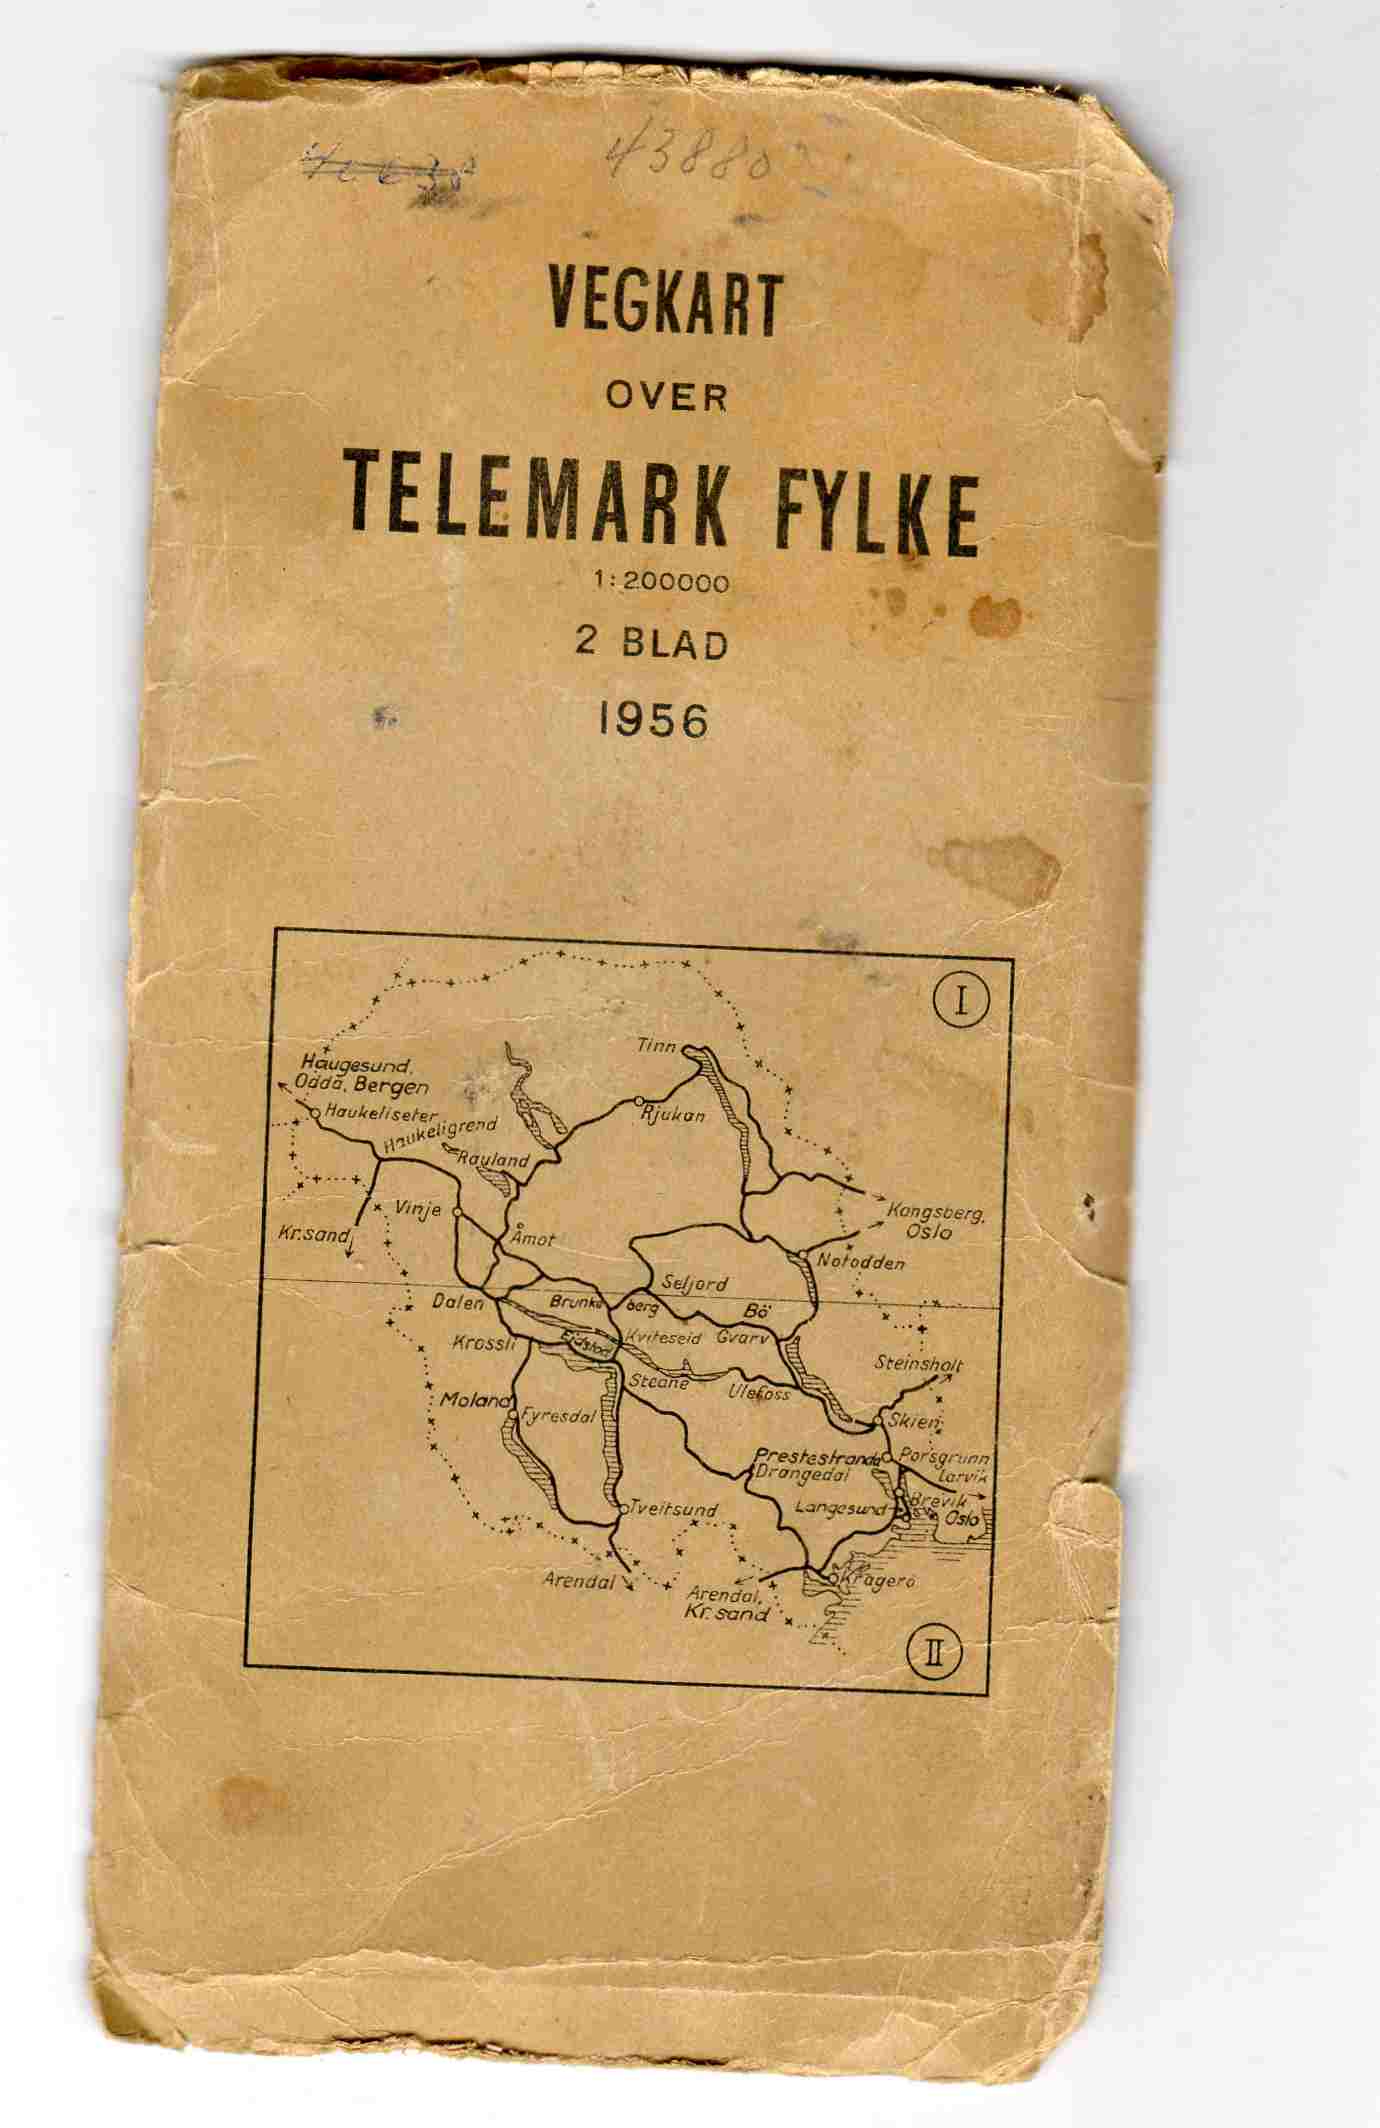 Vegkart over Telemark fylke 2 blad 1956